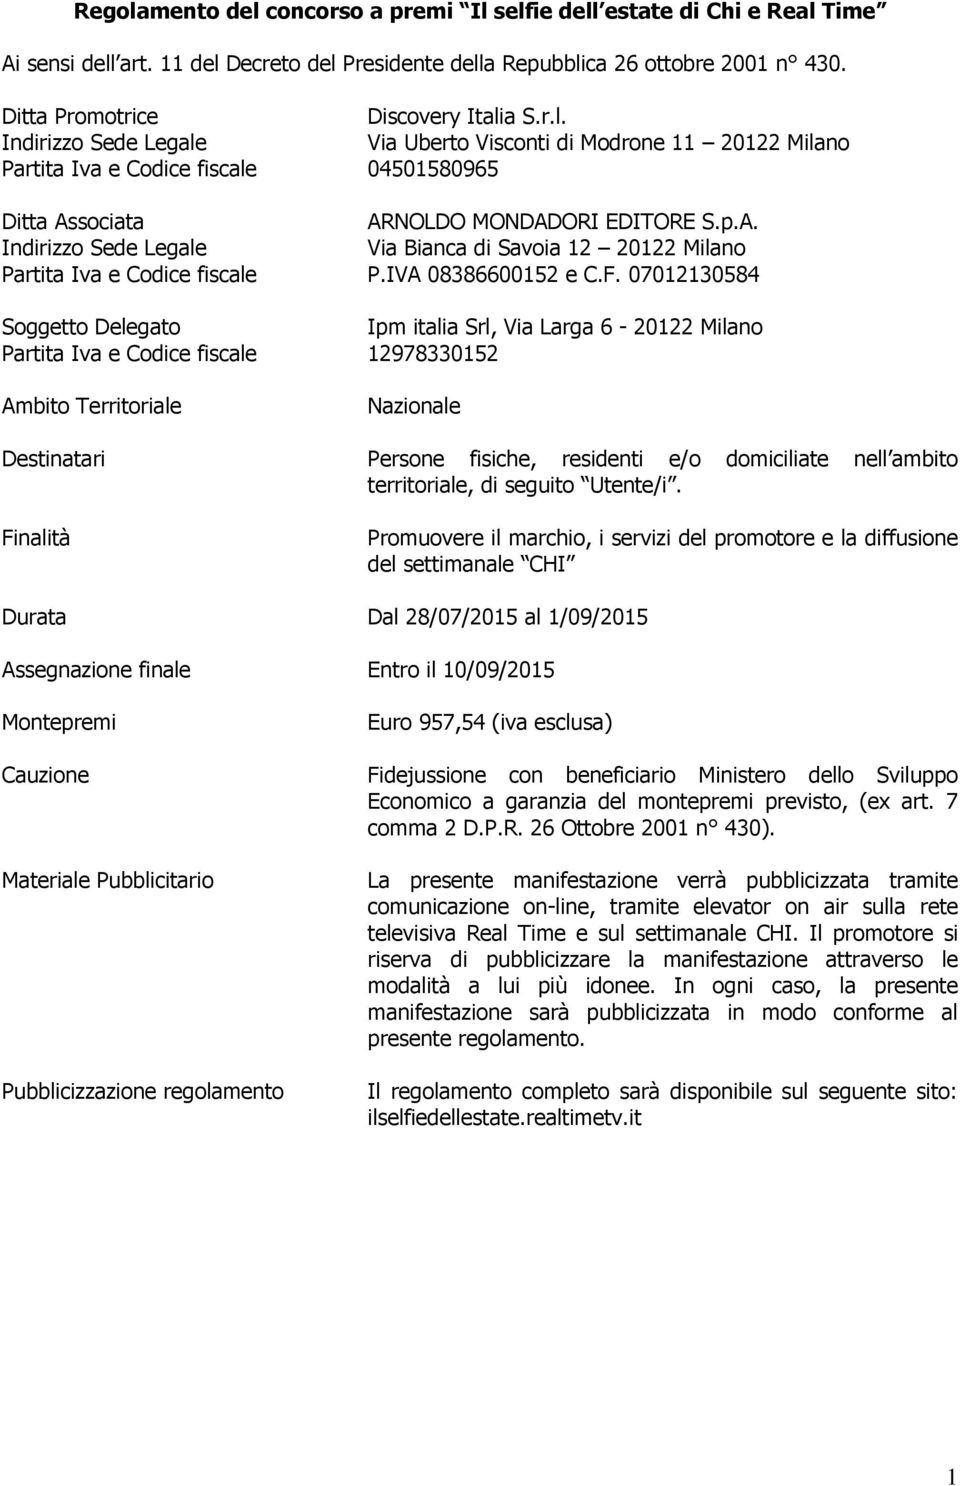 sociata ARNOLDO MONDADORI EDITORE S.p.A. Indirizzo Sede Legale Via Bianca di Savoia 12 20122 Milano Partita Iva e Codice fiscale P.IVA 08386600152 e C.F.